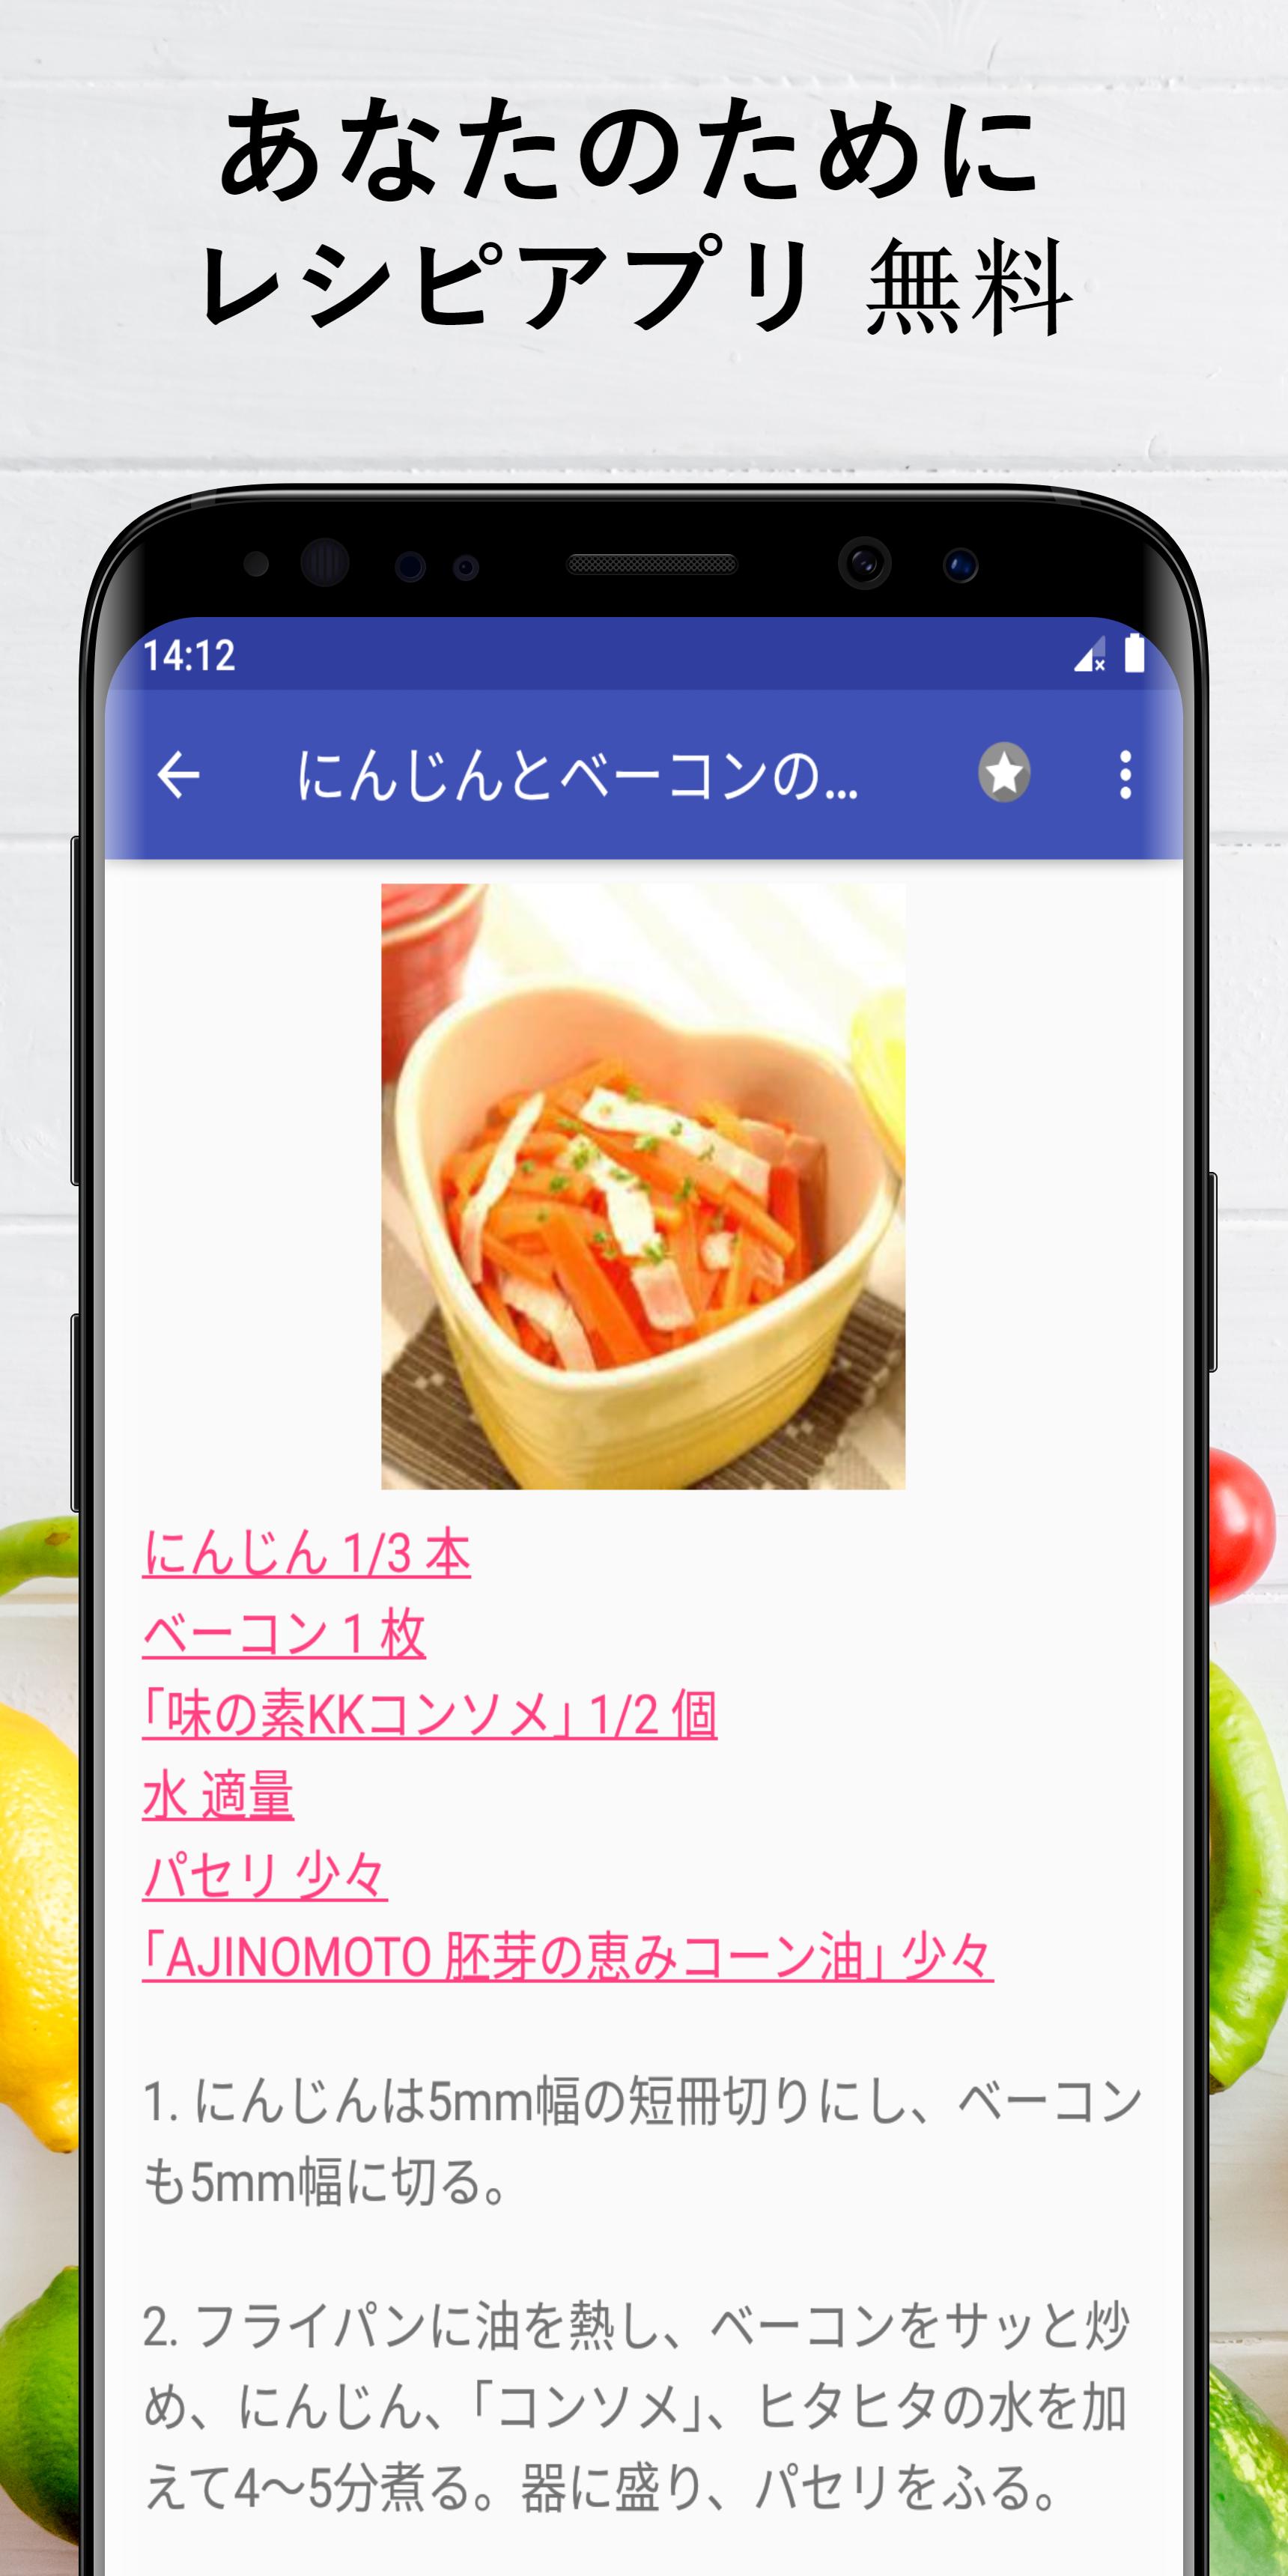 お弁当のレシピアプリオフライン レシピ 記録 For Android Apk Download